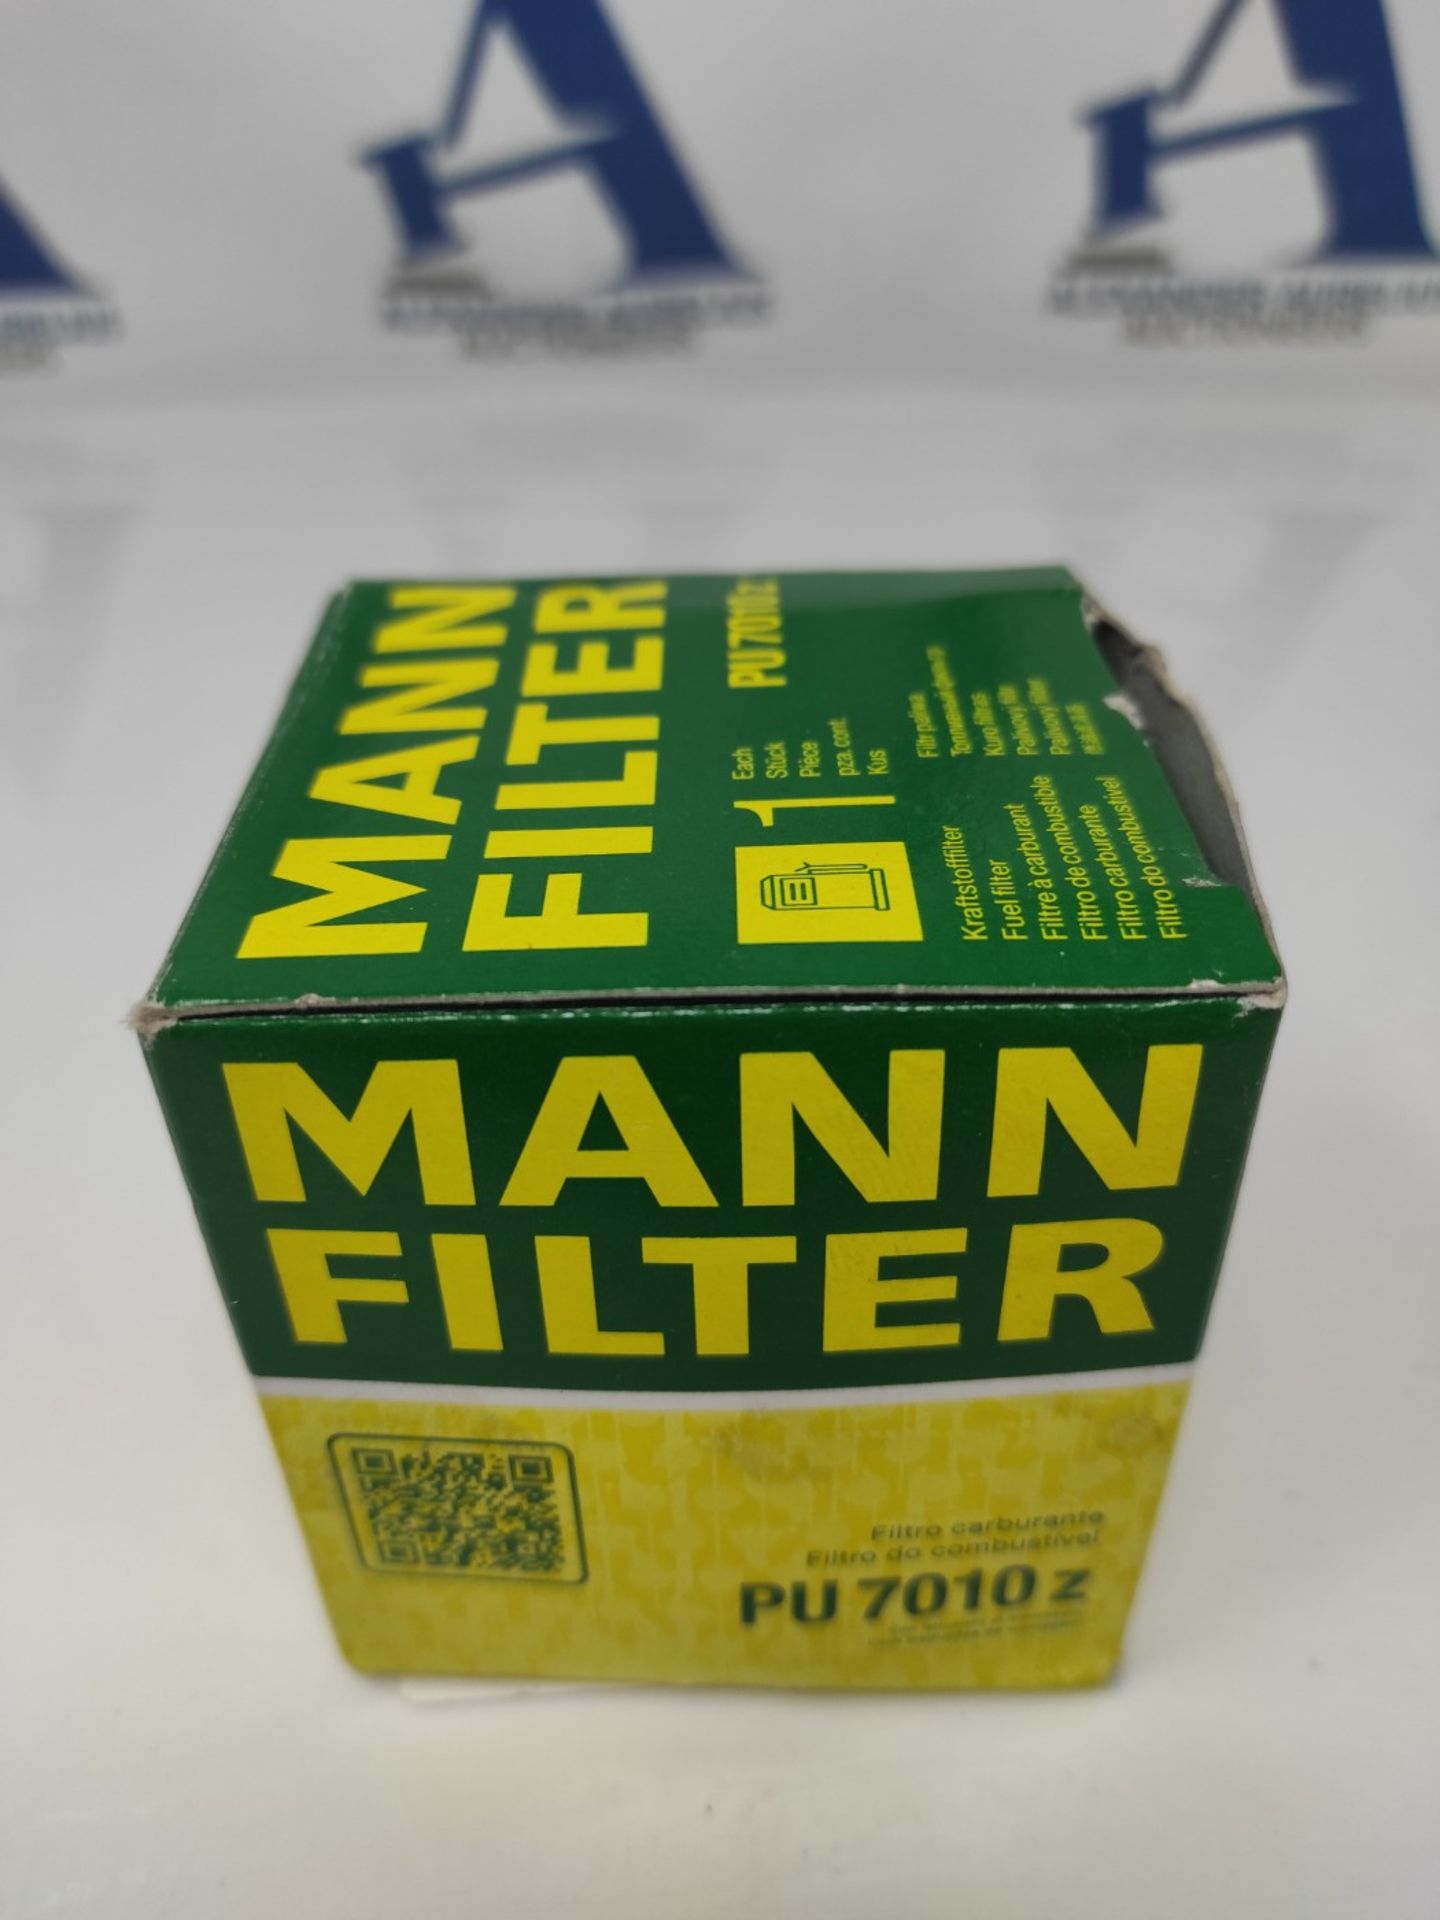 MANN-FILTER PU 7010 z Fuel Filter - Fuel Filter Set with Gasket / Gasket set - For Car - Image 2 of 3